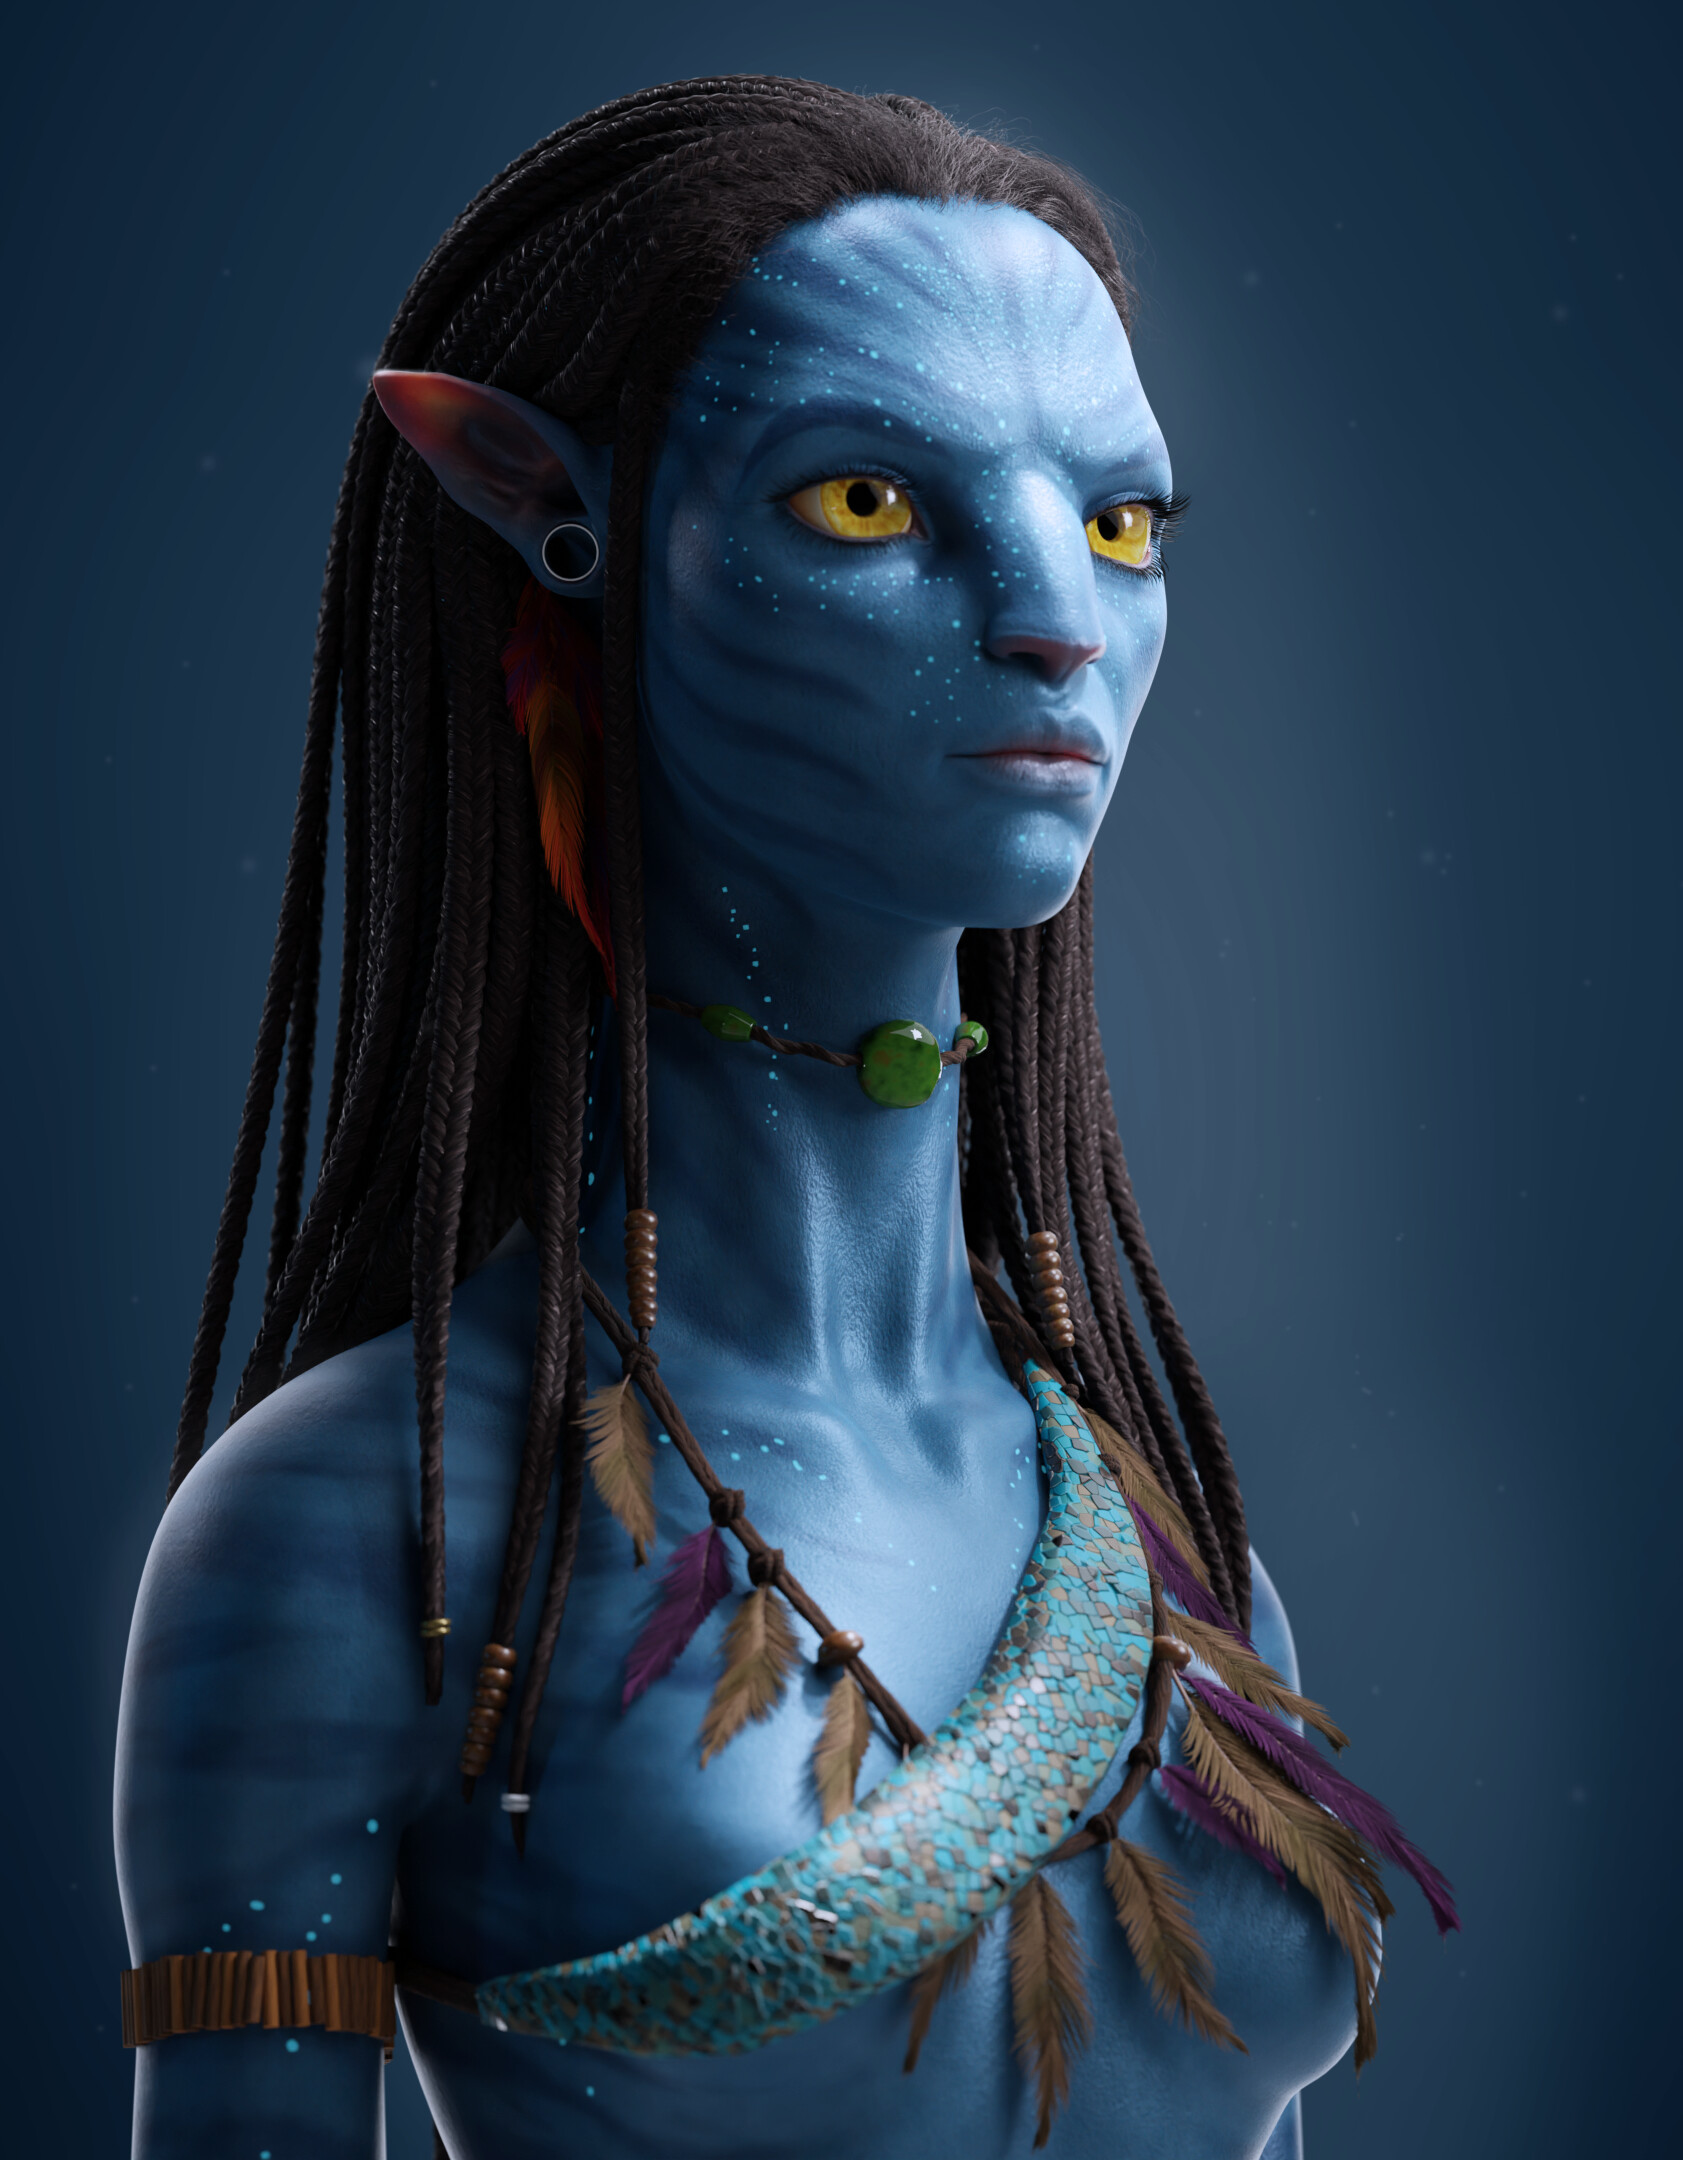 Artstation Avatar Character Modeling Blender Full Videos Recorded